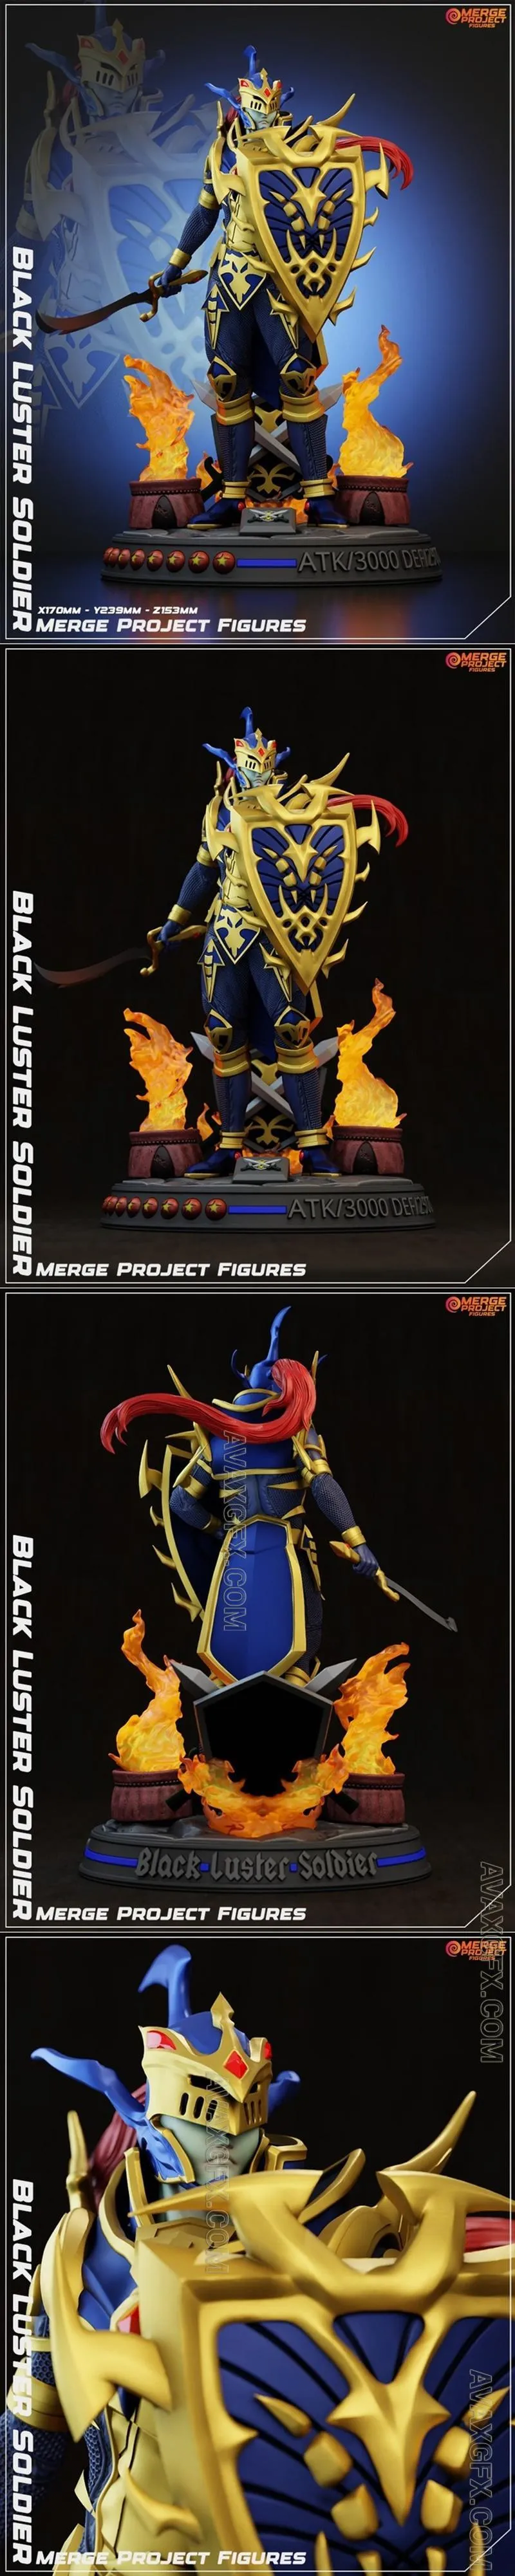 Merge Project Figures - Black Luster Soldier - STL 3D Model